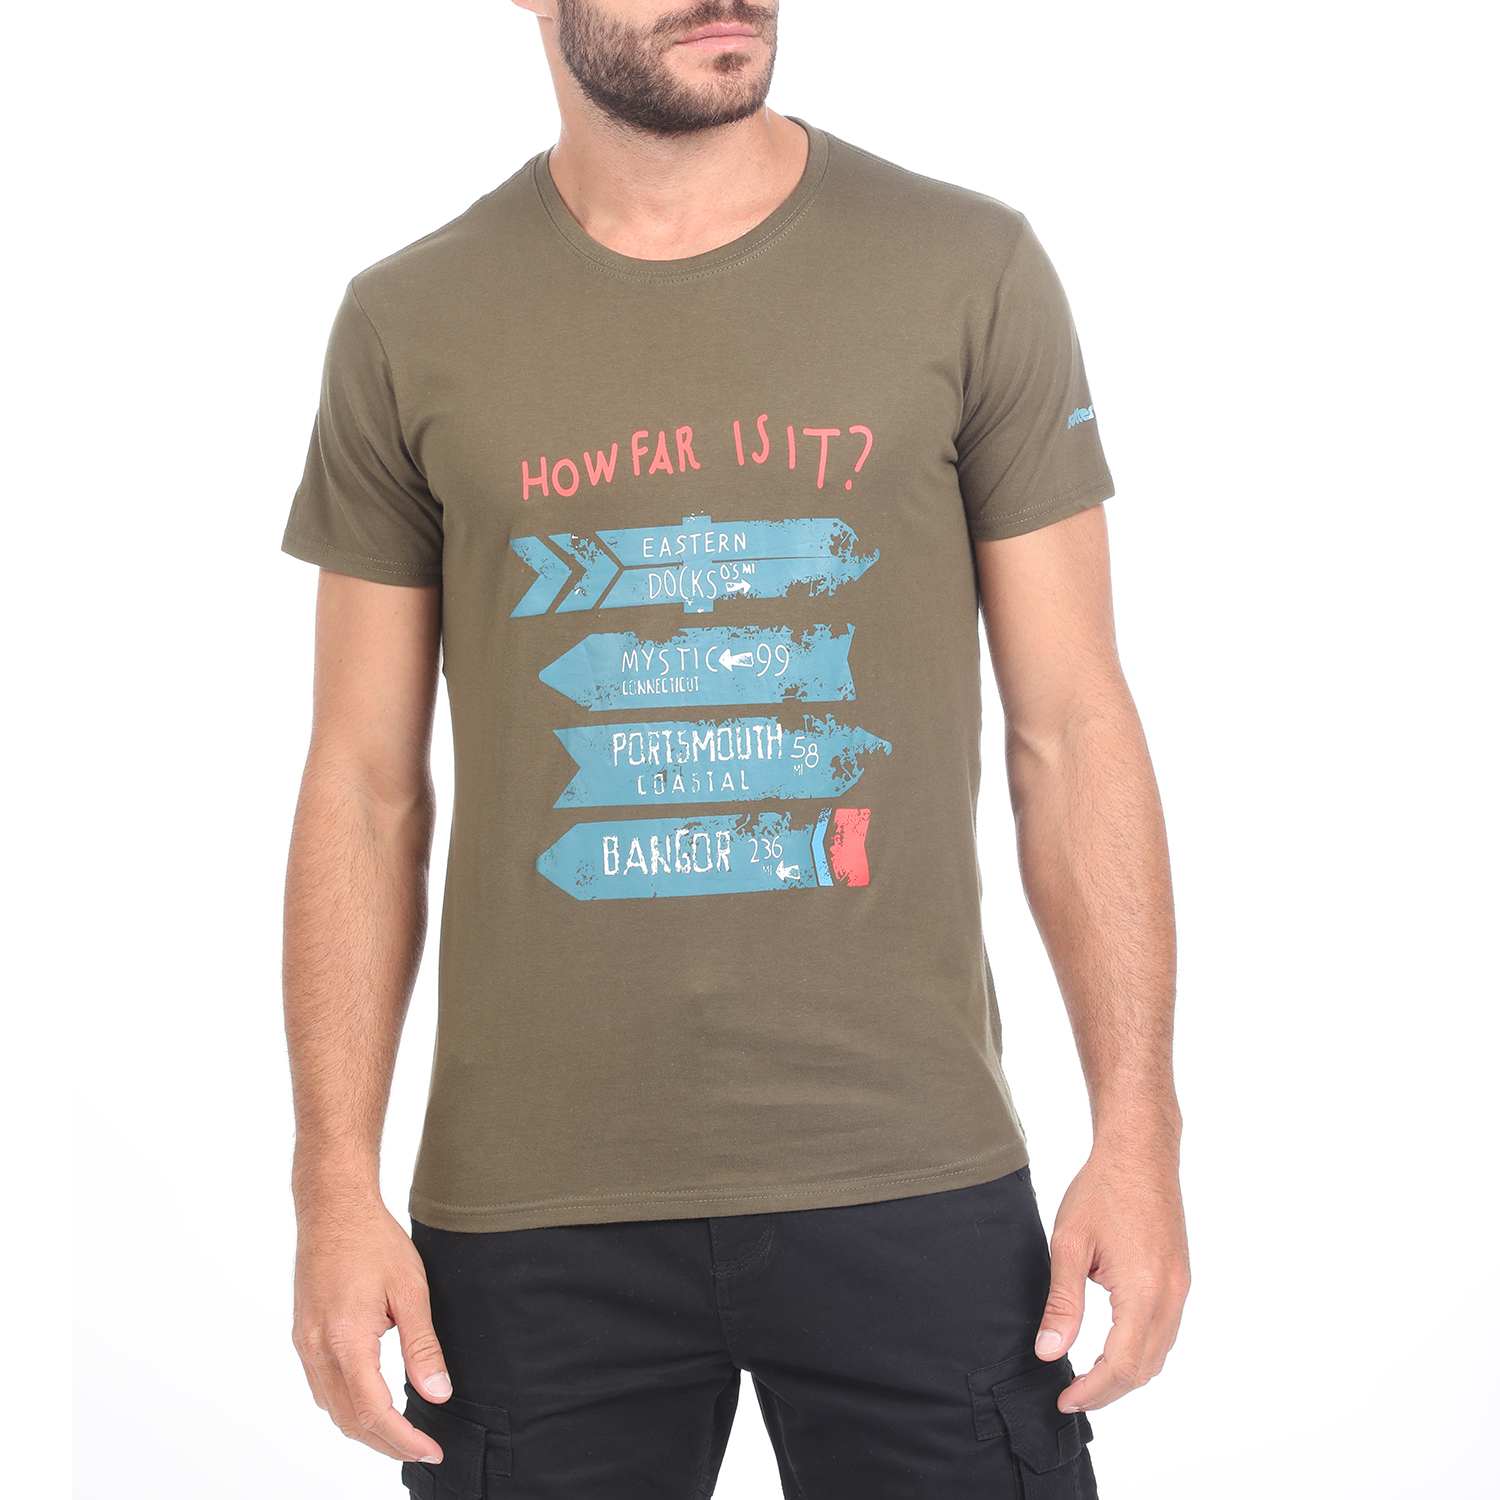 Ανδρικά/Ρούχα/Μπλούζες/Κοντομάνικες BATTERY - Ανδρικό t-shirt BATTERY χακί